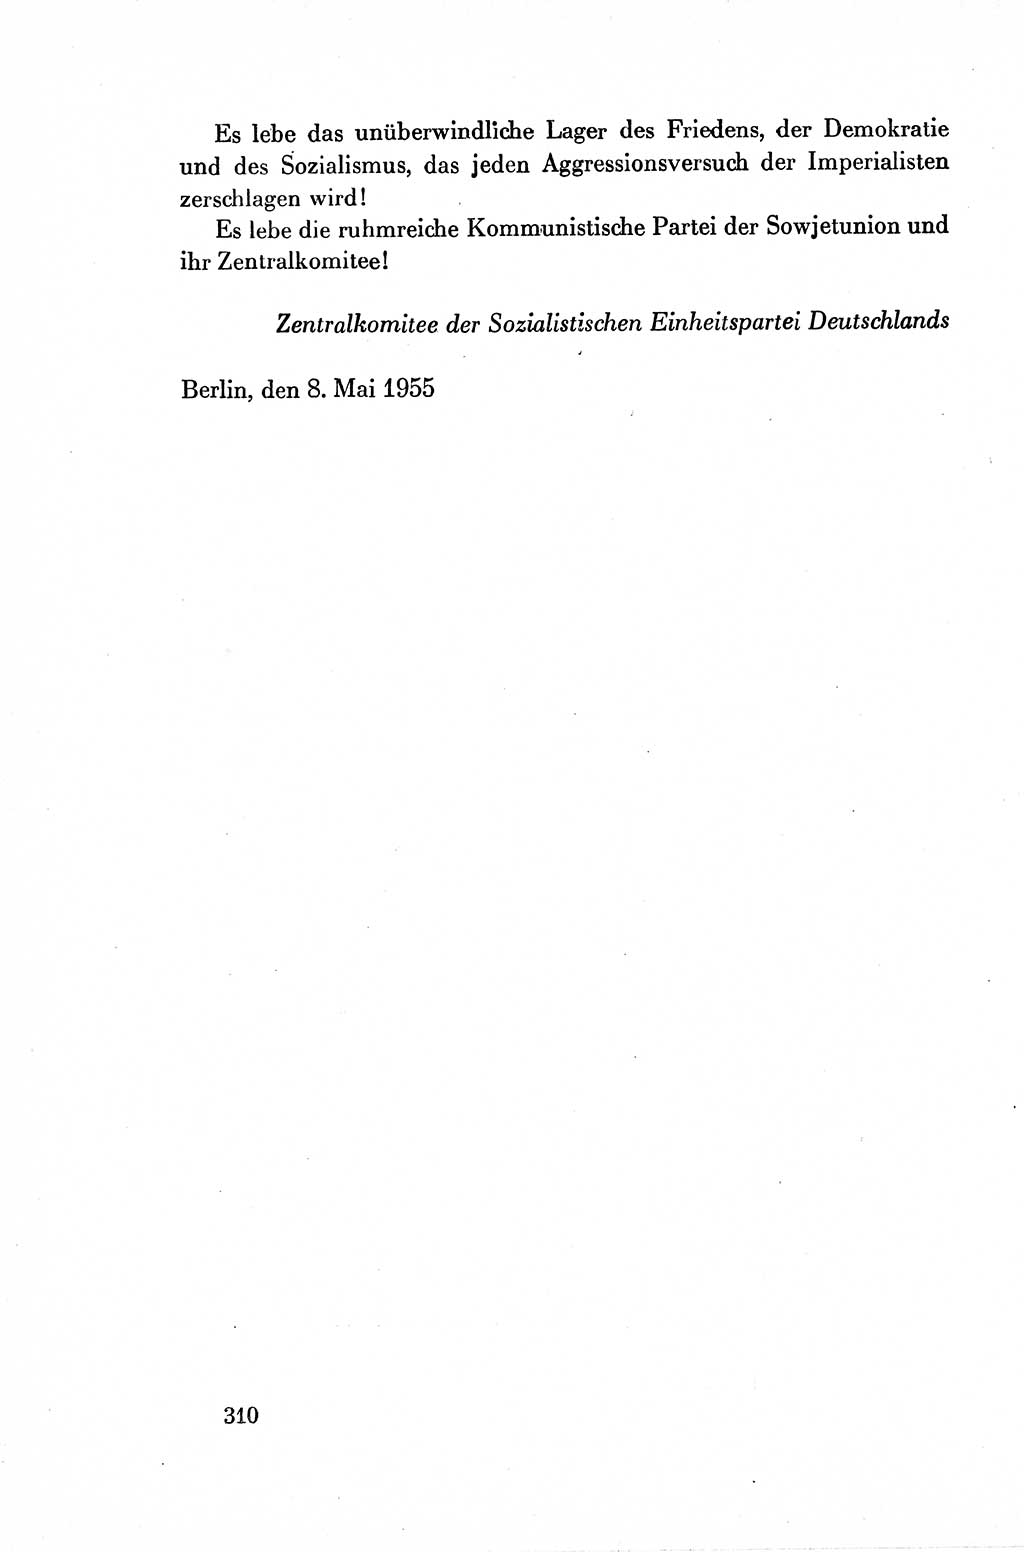 Dokumente der Sozialistischen Einheitspartei Deutschlands (SED) [Deutsche Demokratische Republik (DDR)] 1954-1955, Seite 310 (Dok. SED DDR 1954-1955, S. 310)